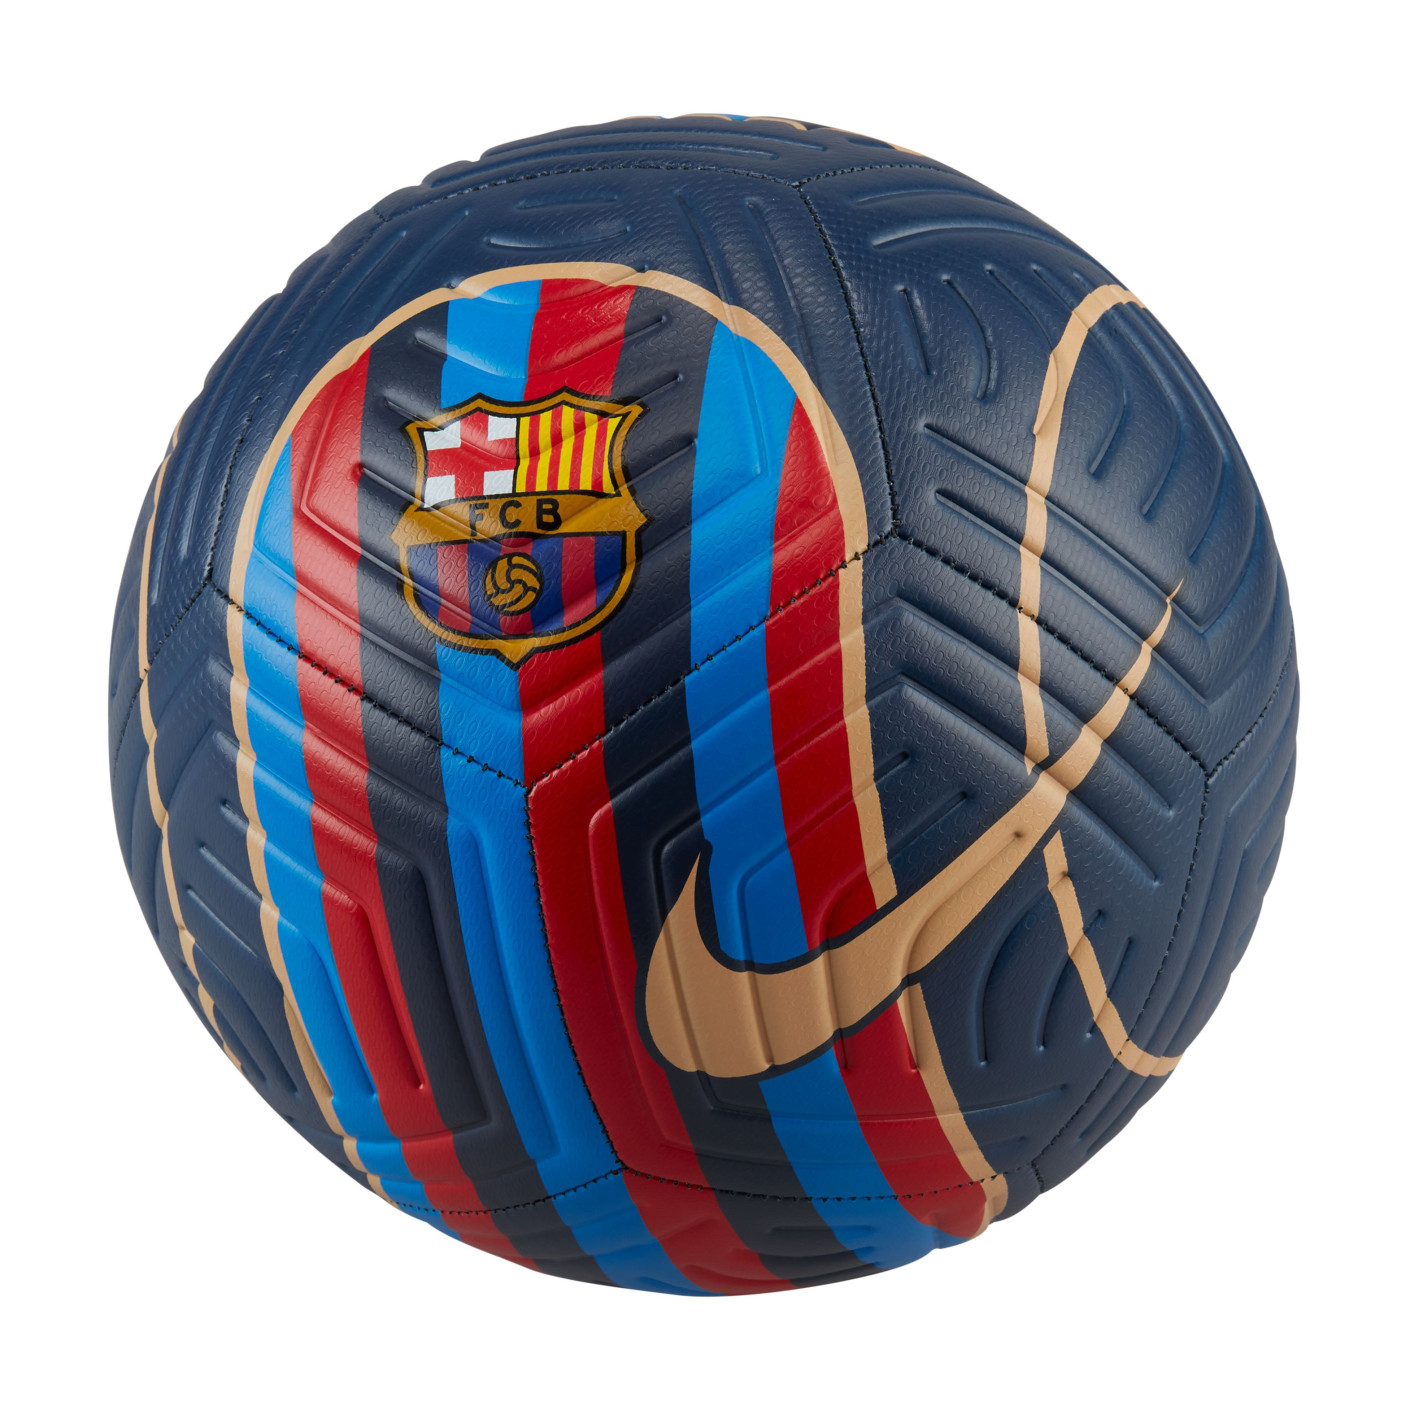 kool Evalueerbaar absorptie Nike FC Barcelona Strike Voetbal Donkerblauw Rood